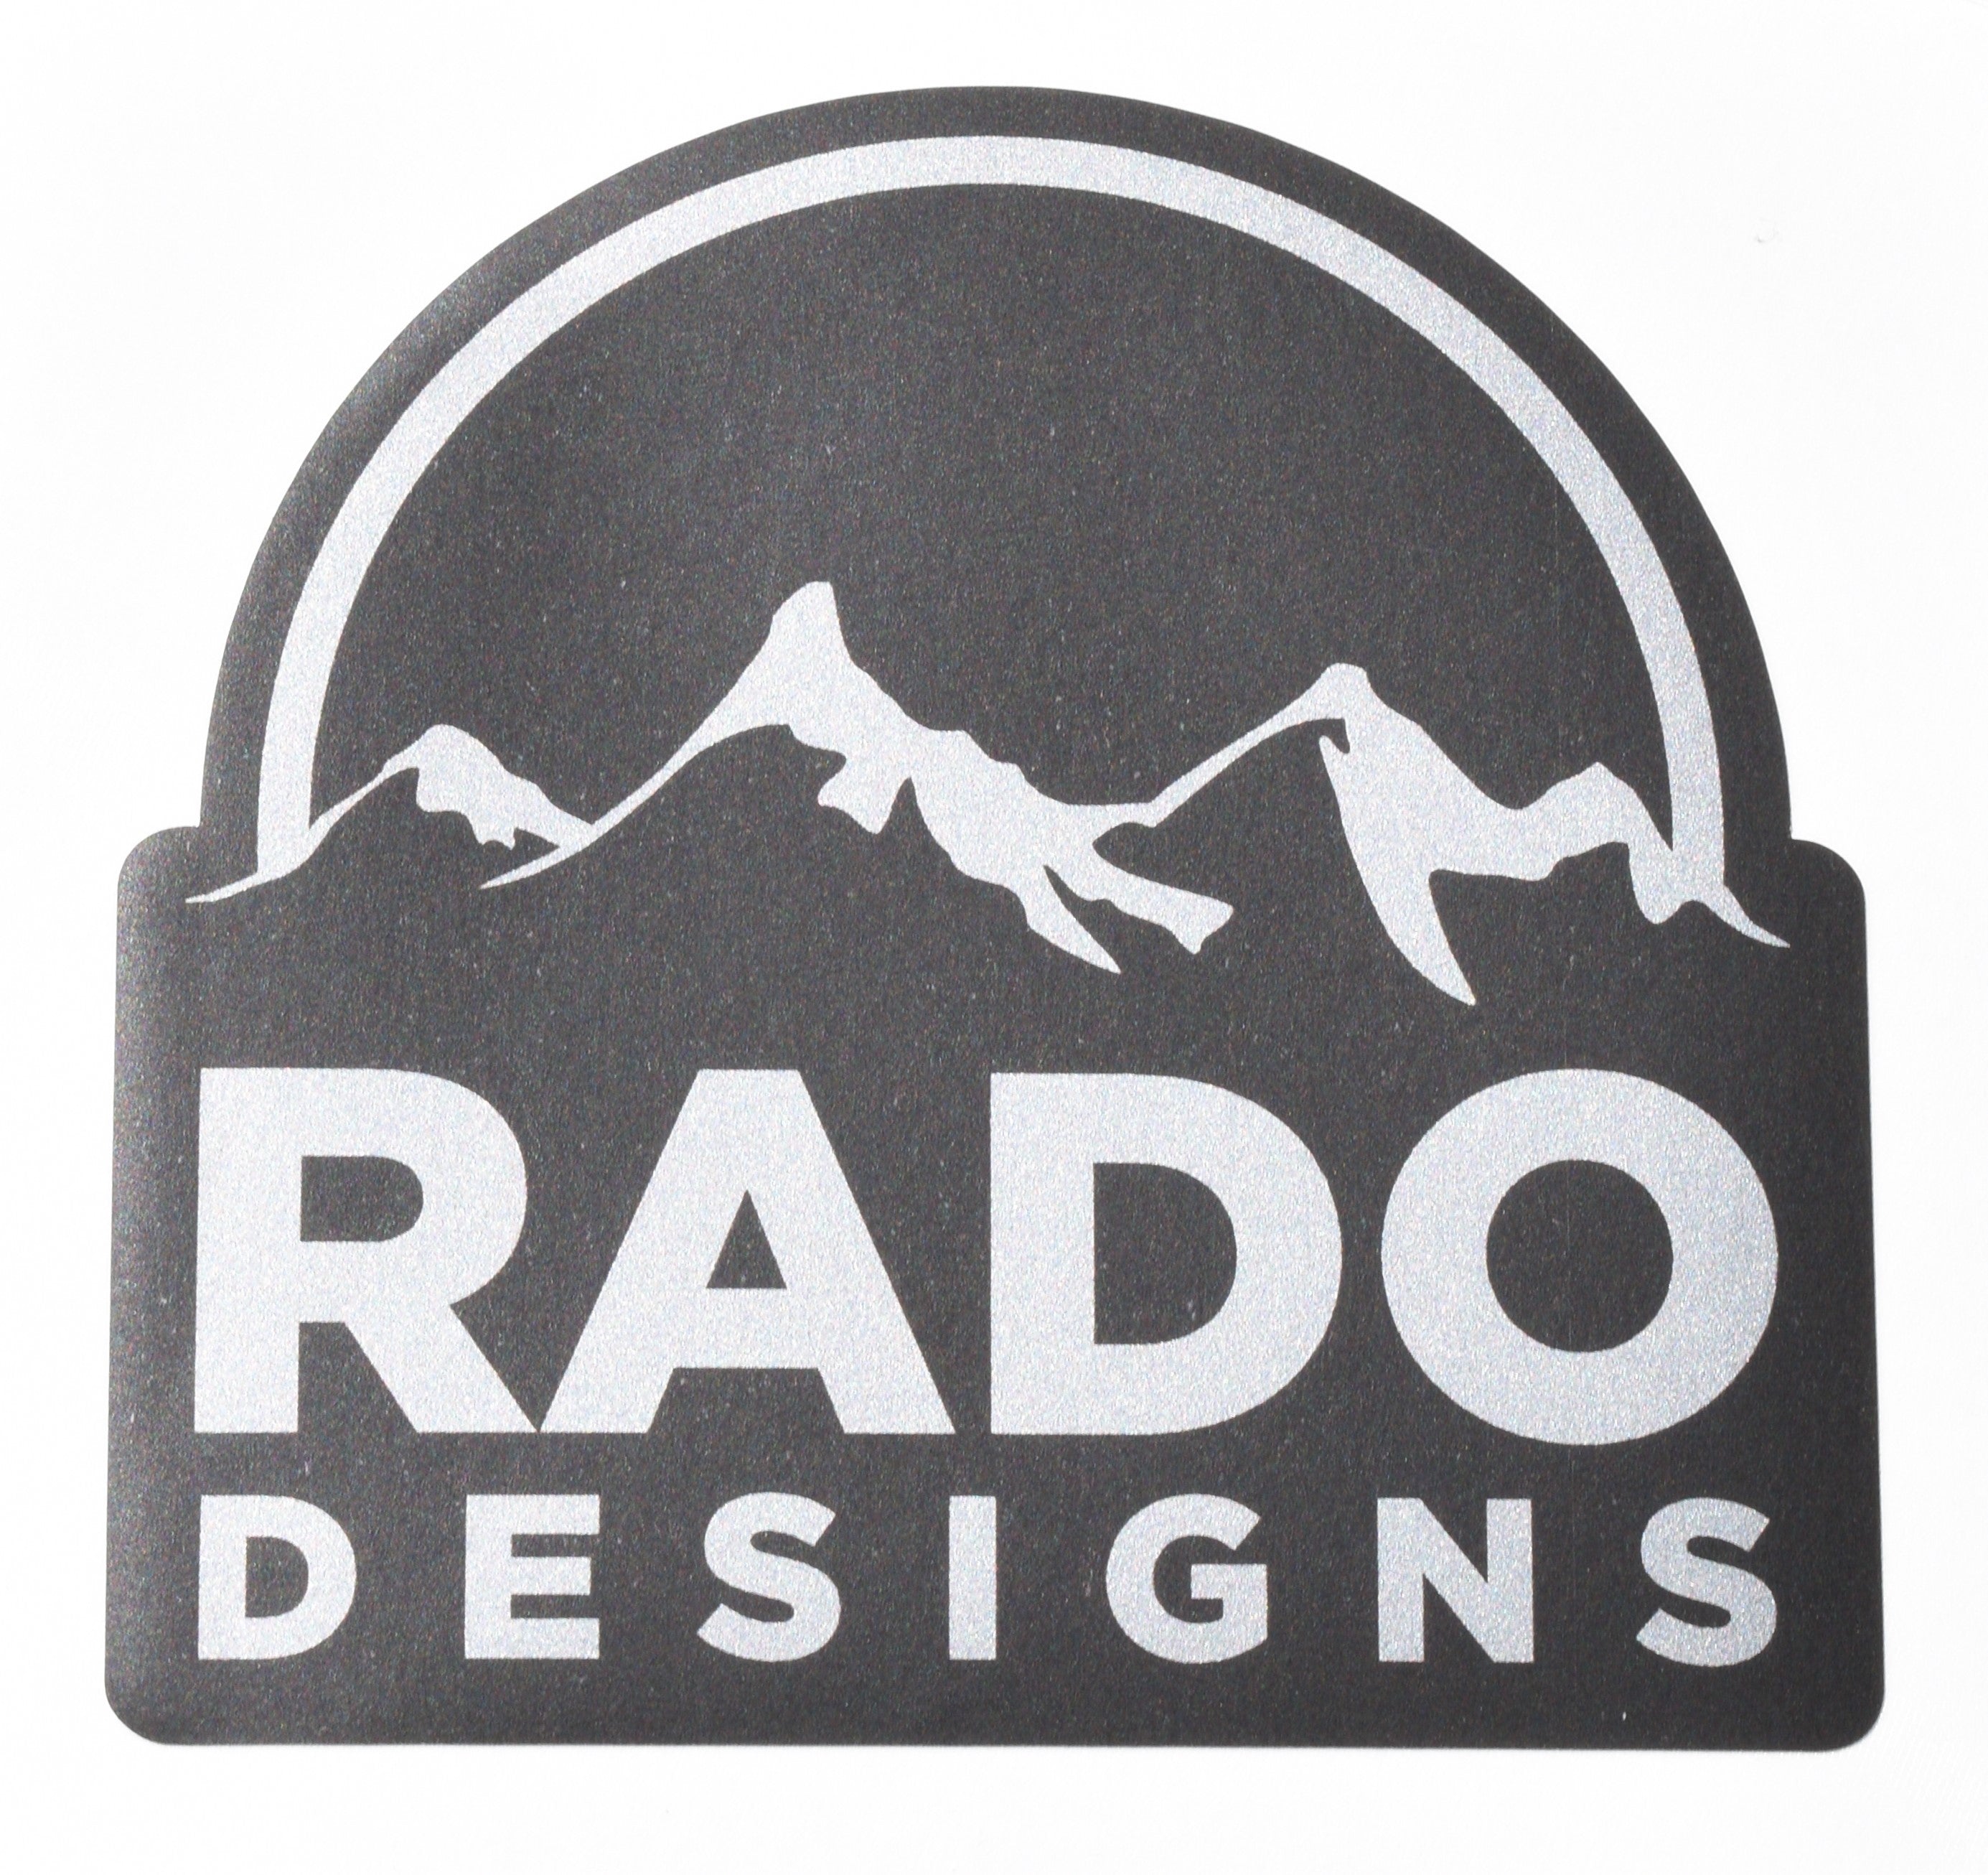 Rado Fines by Rio Creativo on Dribbble